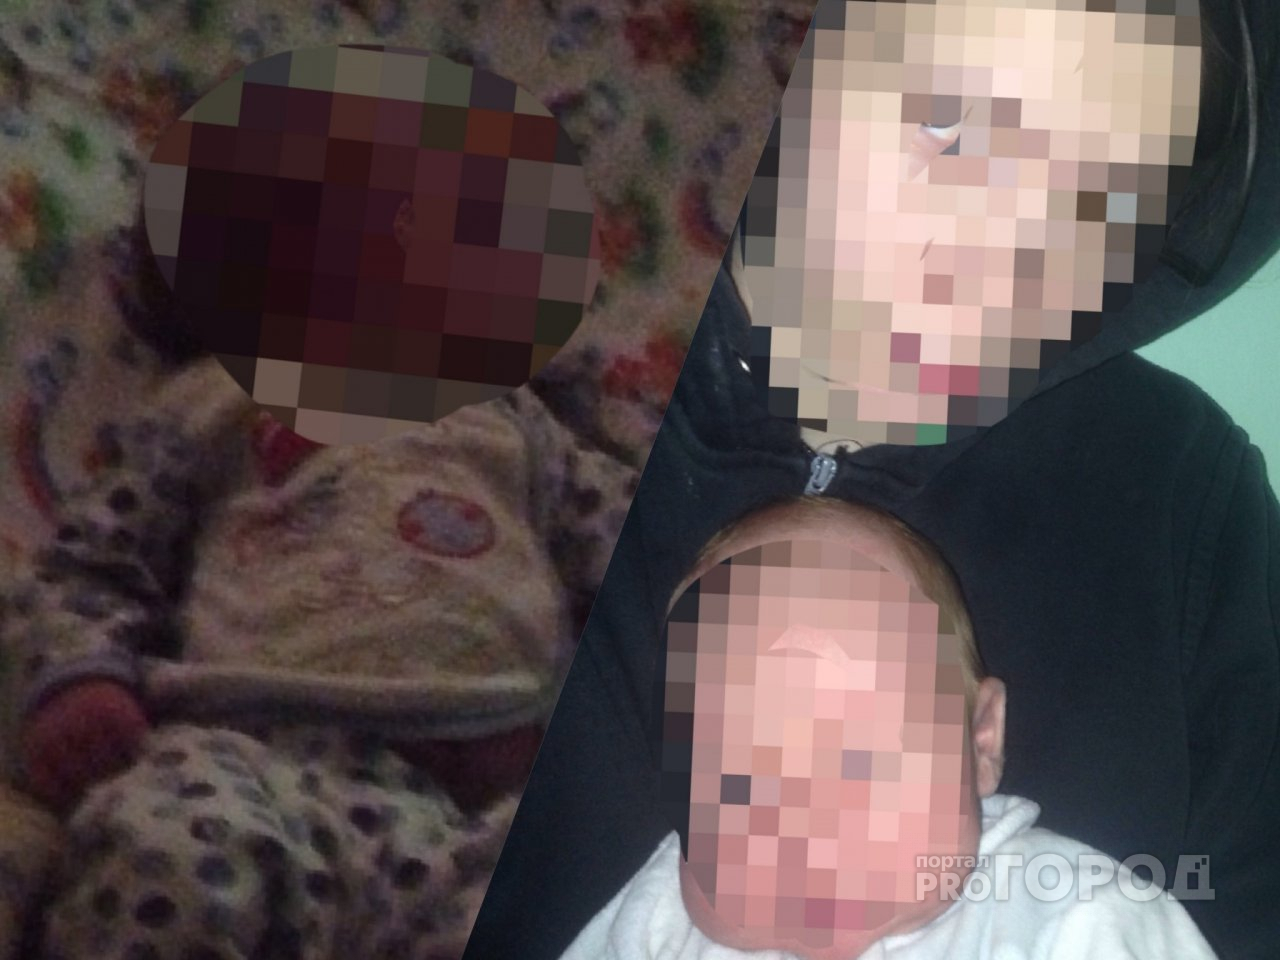 Трагедия в Ярославле: умирающая бабушка упала на младенца и задавила его насмерть